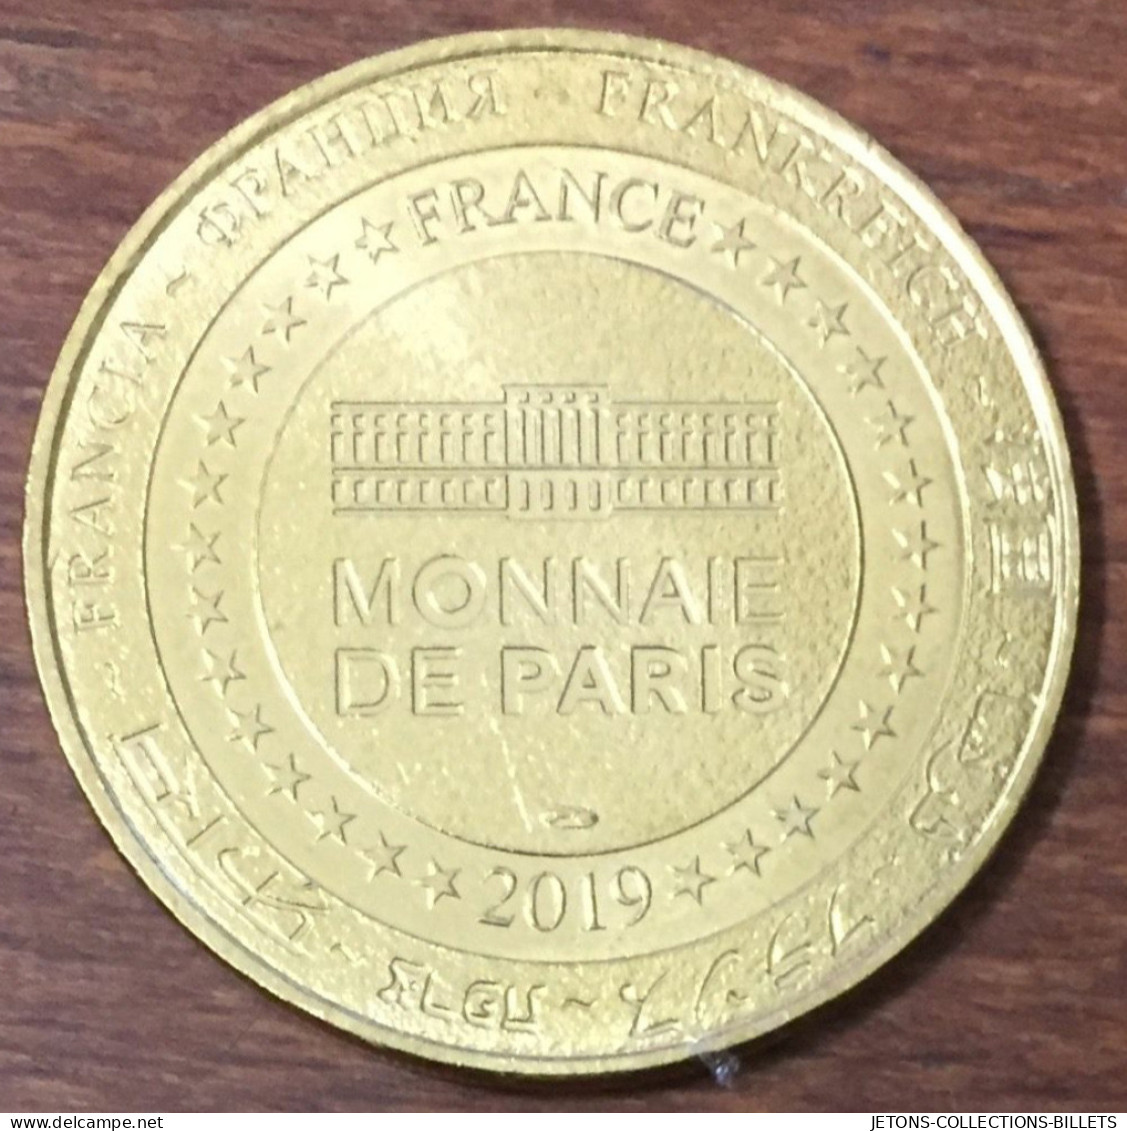 72 LE MANS 24H PATROUILLE DE FRANCE MDP 2019 MÉDAILLE SOUVENIR MONNAIE DE PARIS JETON TOURISTIQUE MEDALS TOKENS COINS - 2019